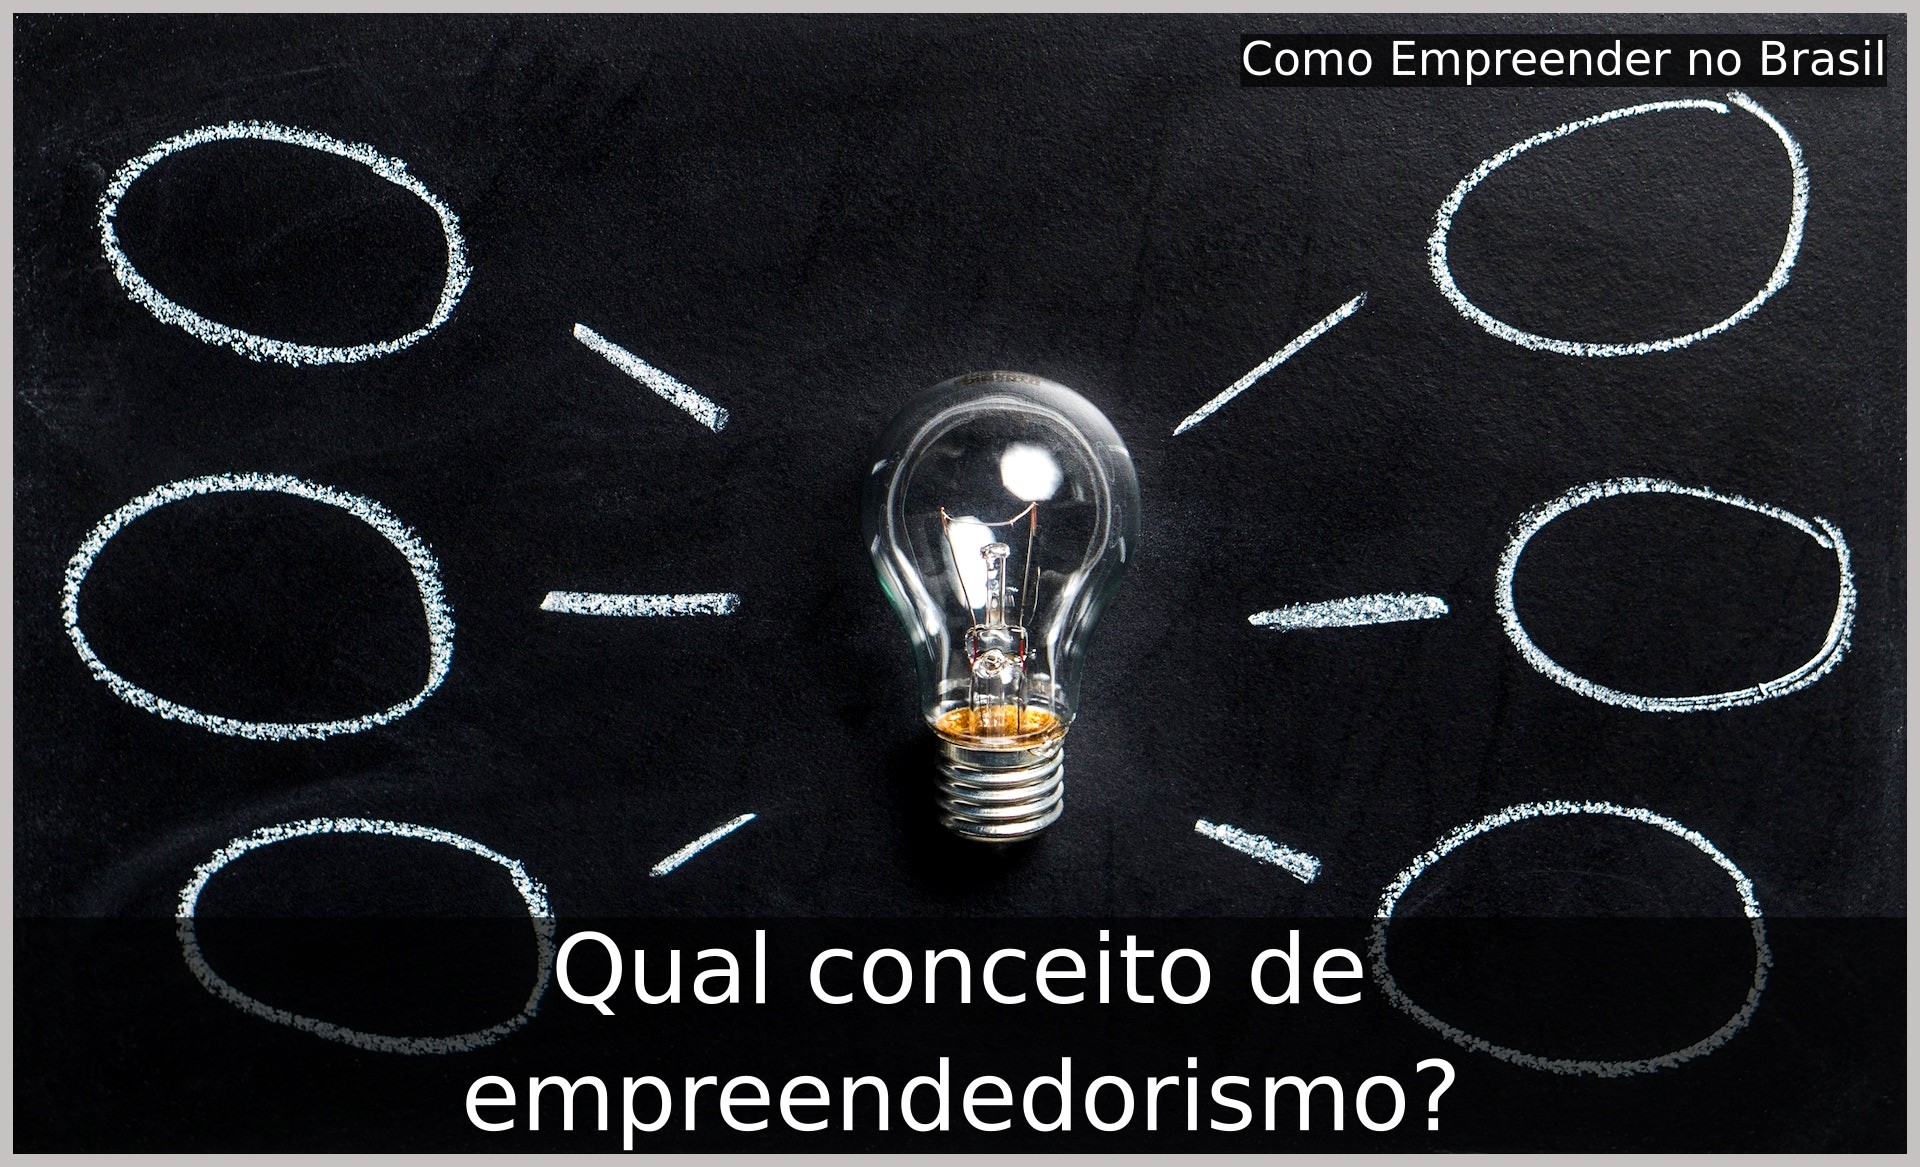 Uma lâmpada representando o conceito de empreendedorismo